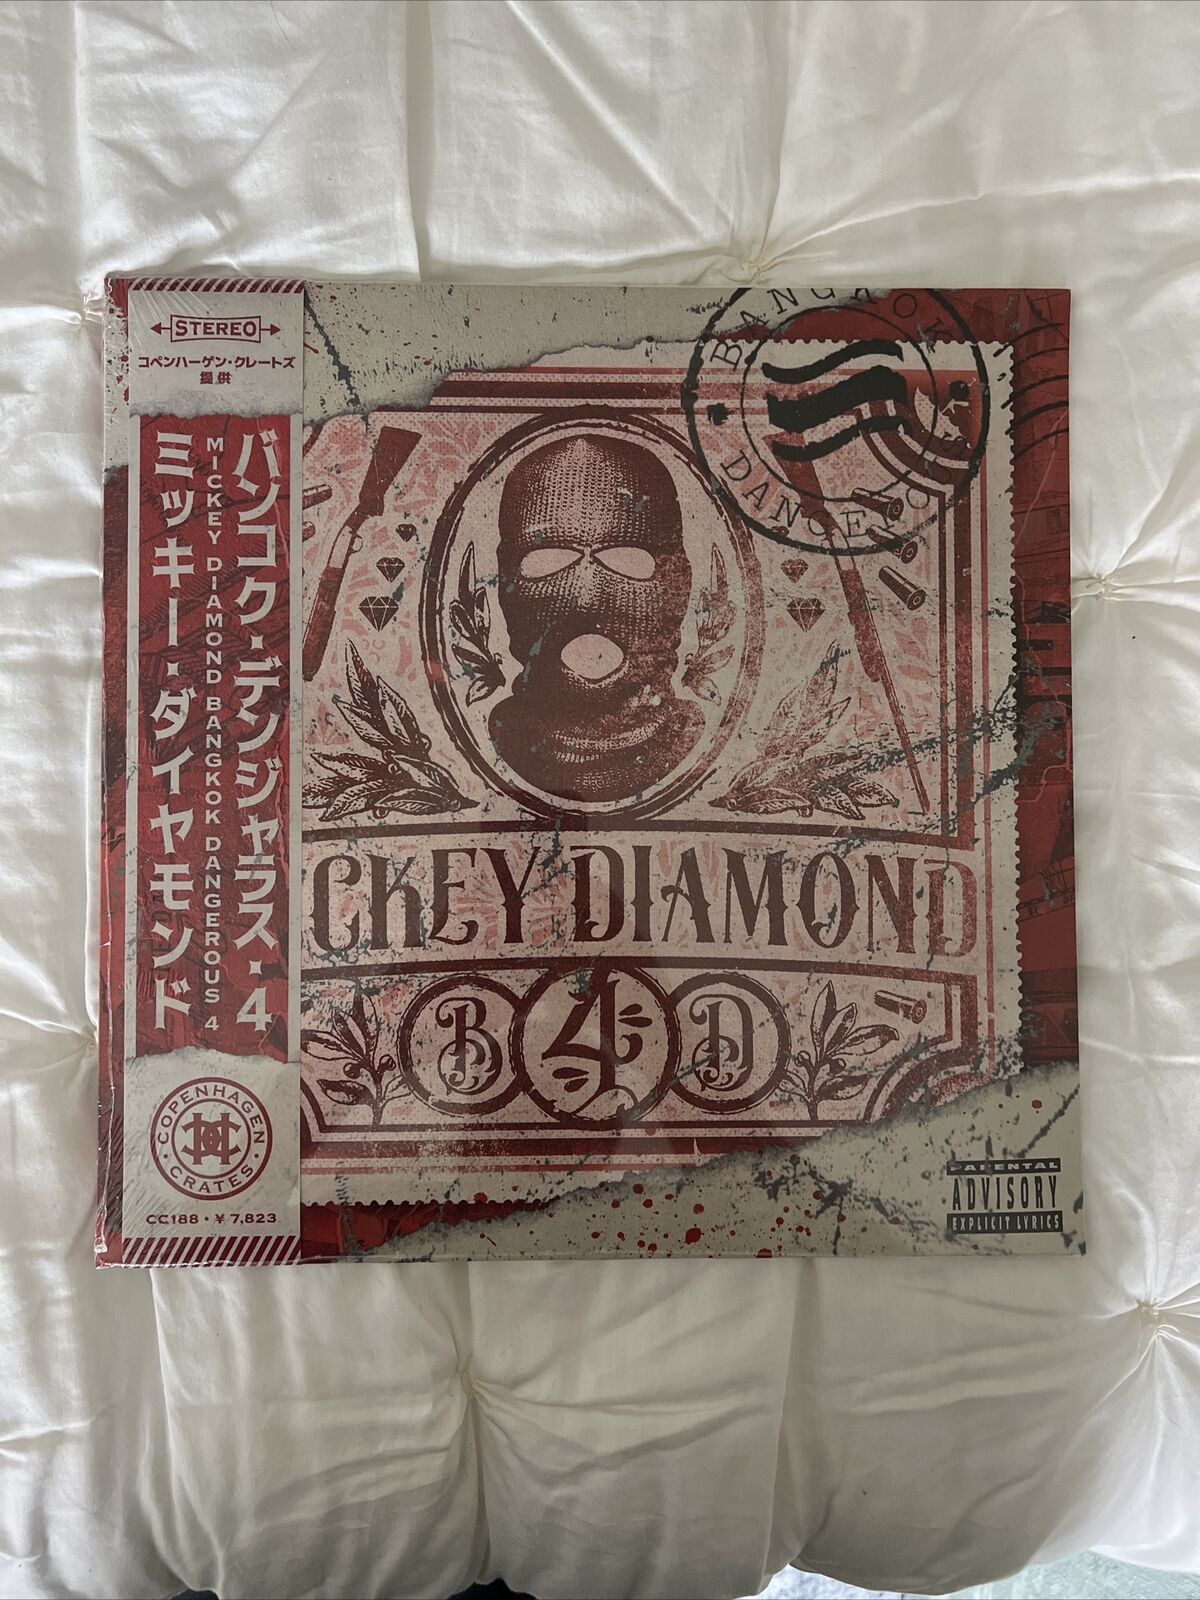 Mickey Diamond Bangkok Dangerous Vol. 4 Vinyl  WHITE/RED SWIRL W/ OBI ALT COVER